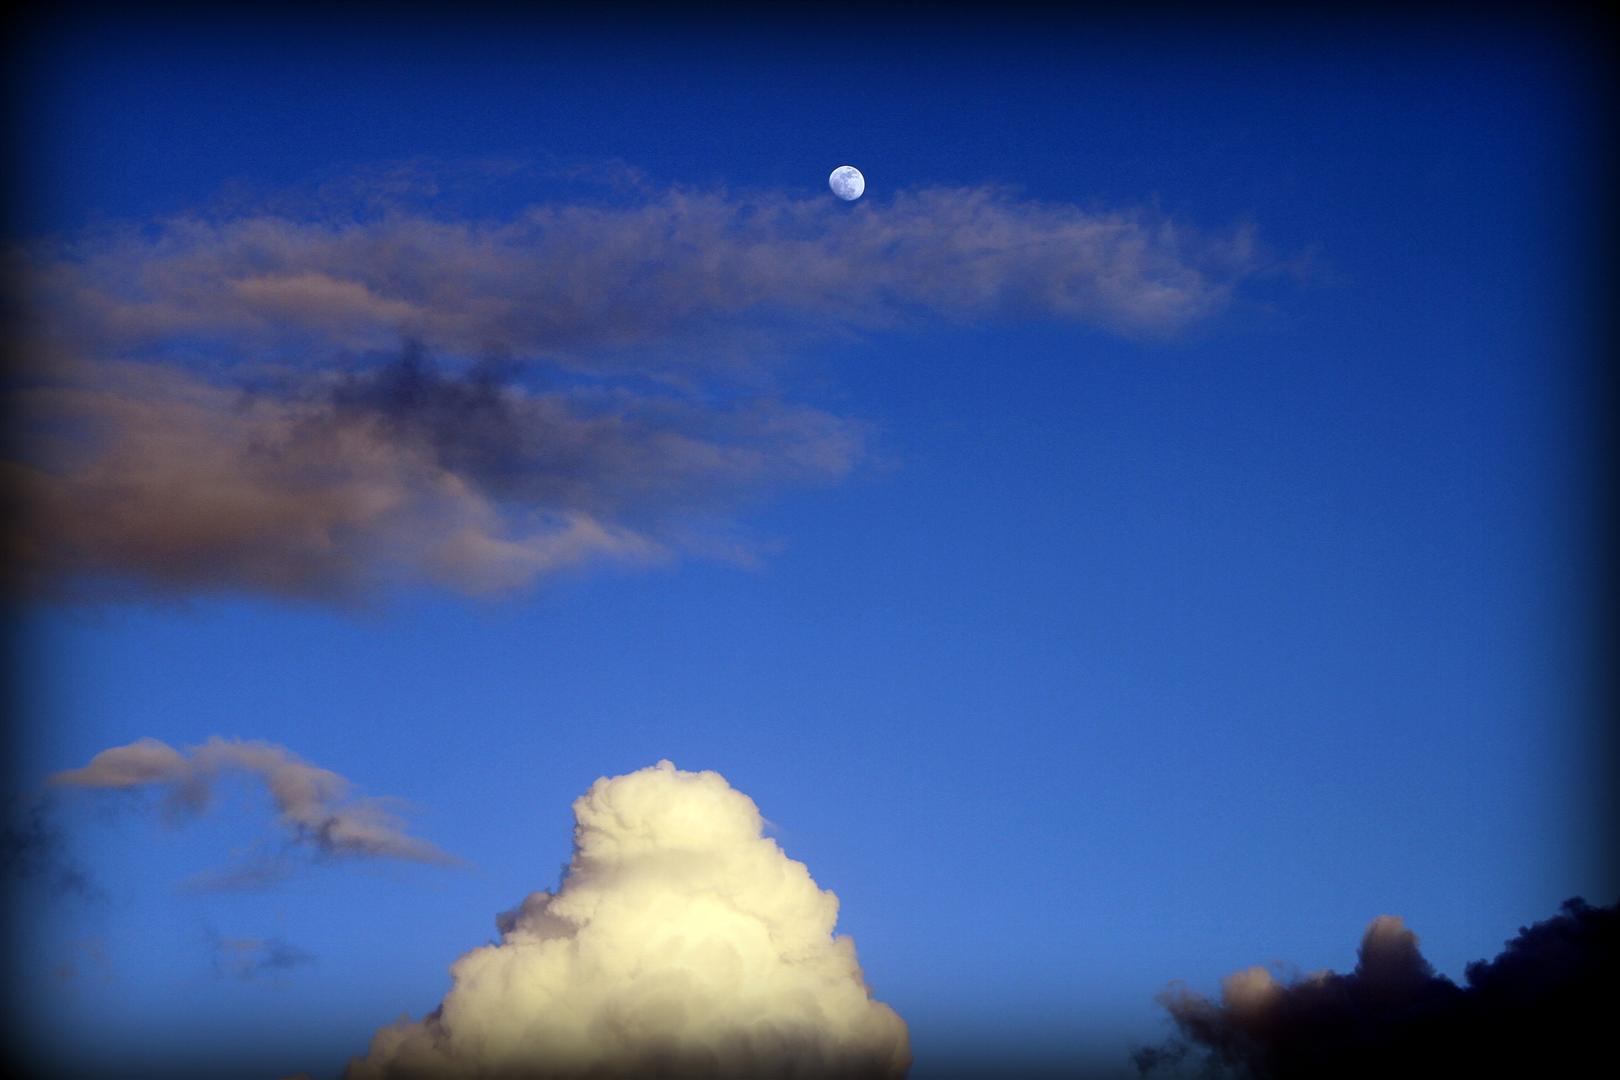 A Lua nas Nuvens